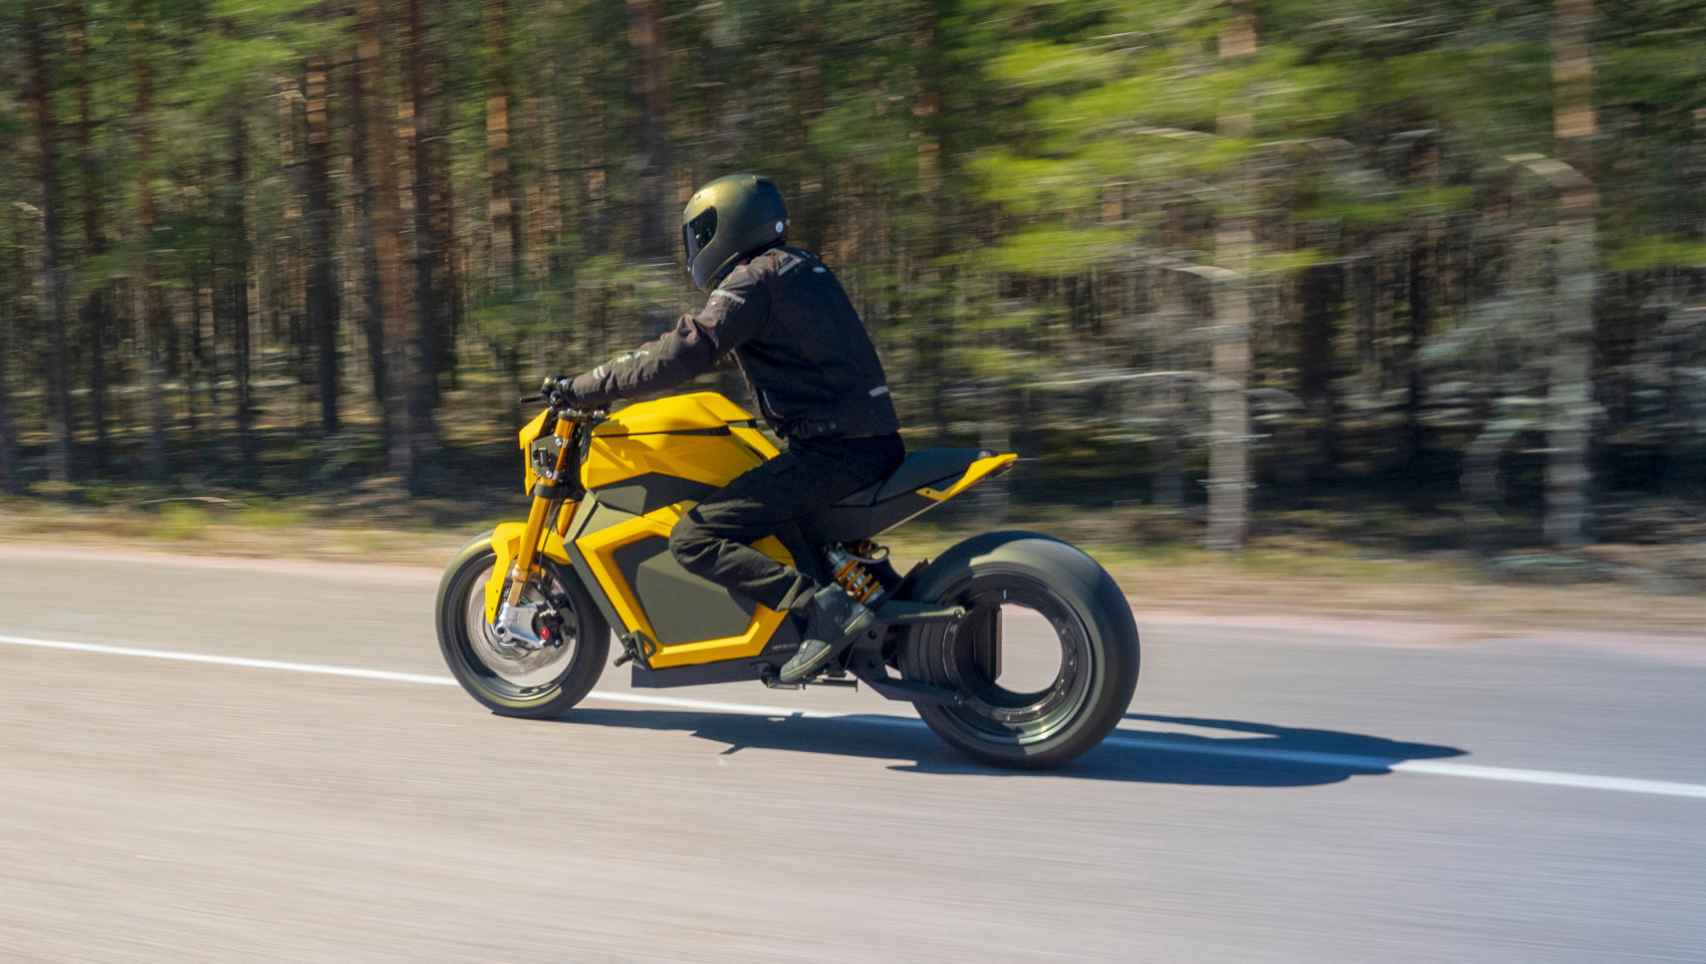 La moto eléctrica Verge TS ya está siendo probada en carretera